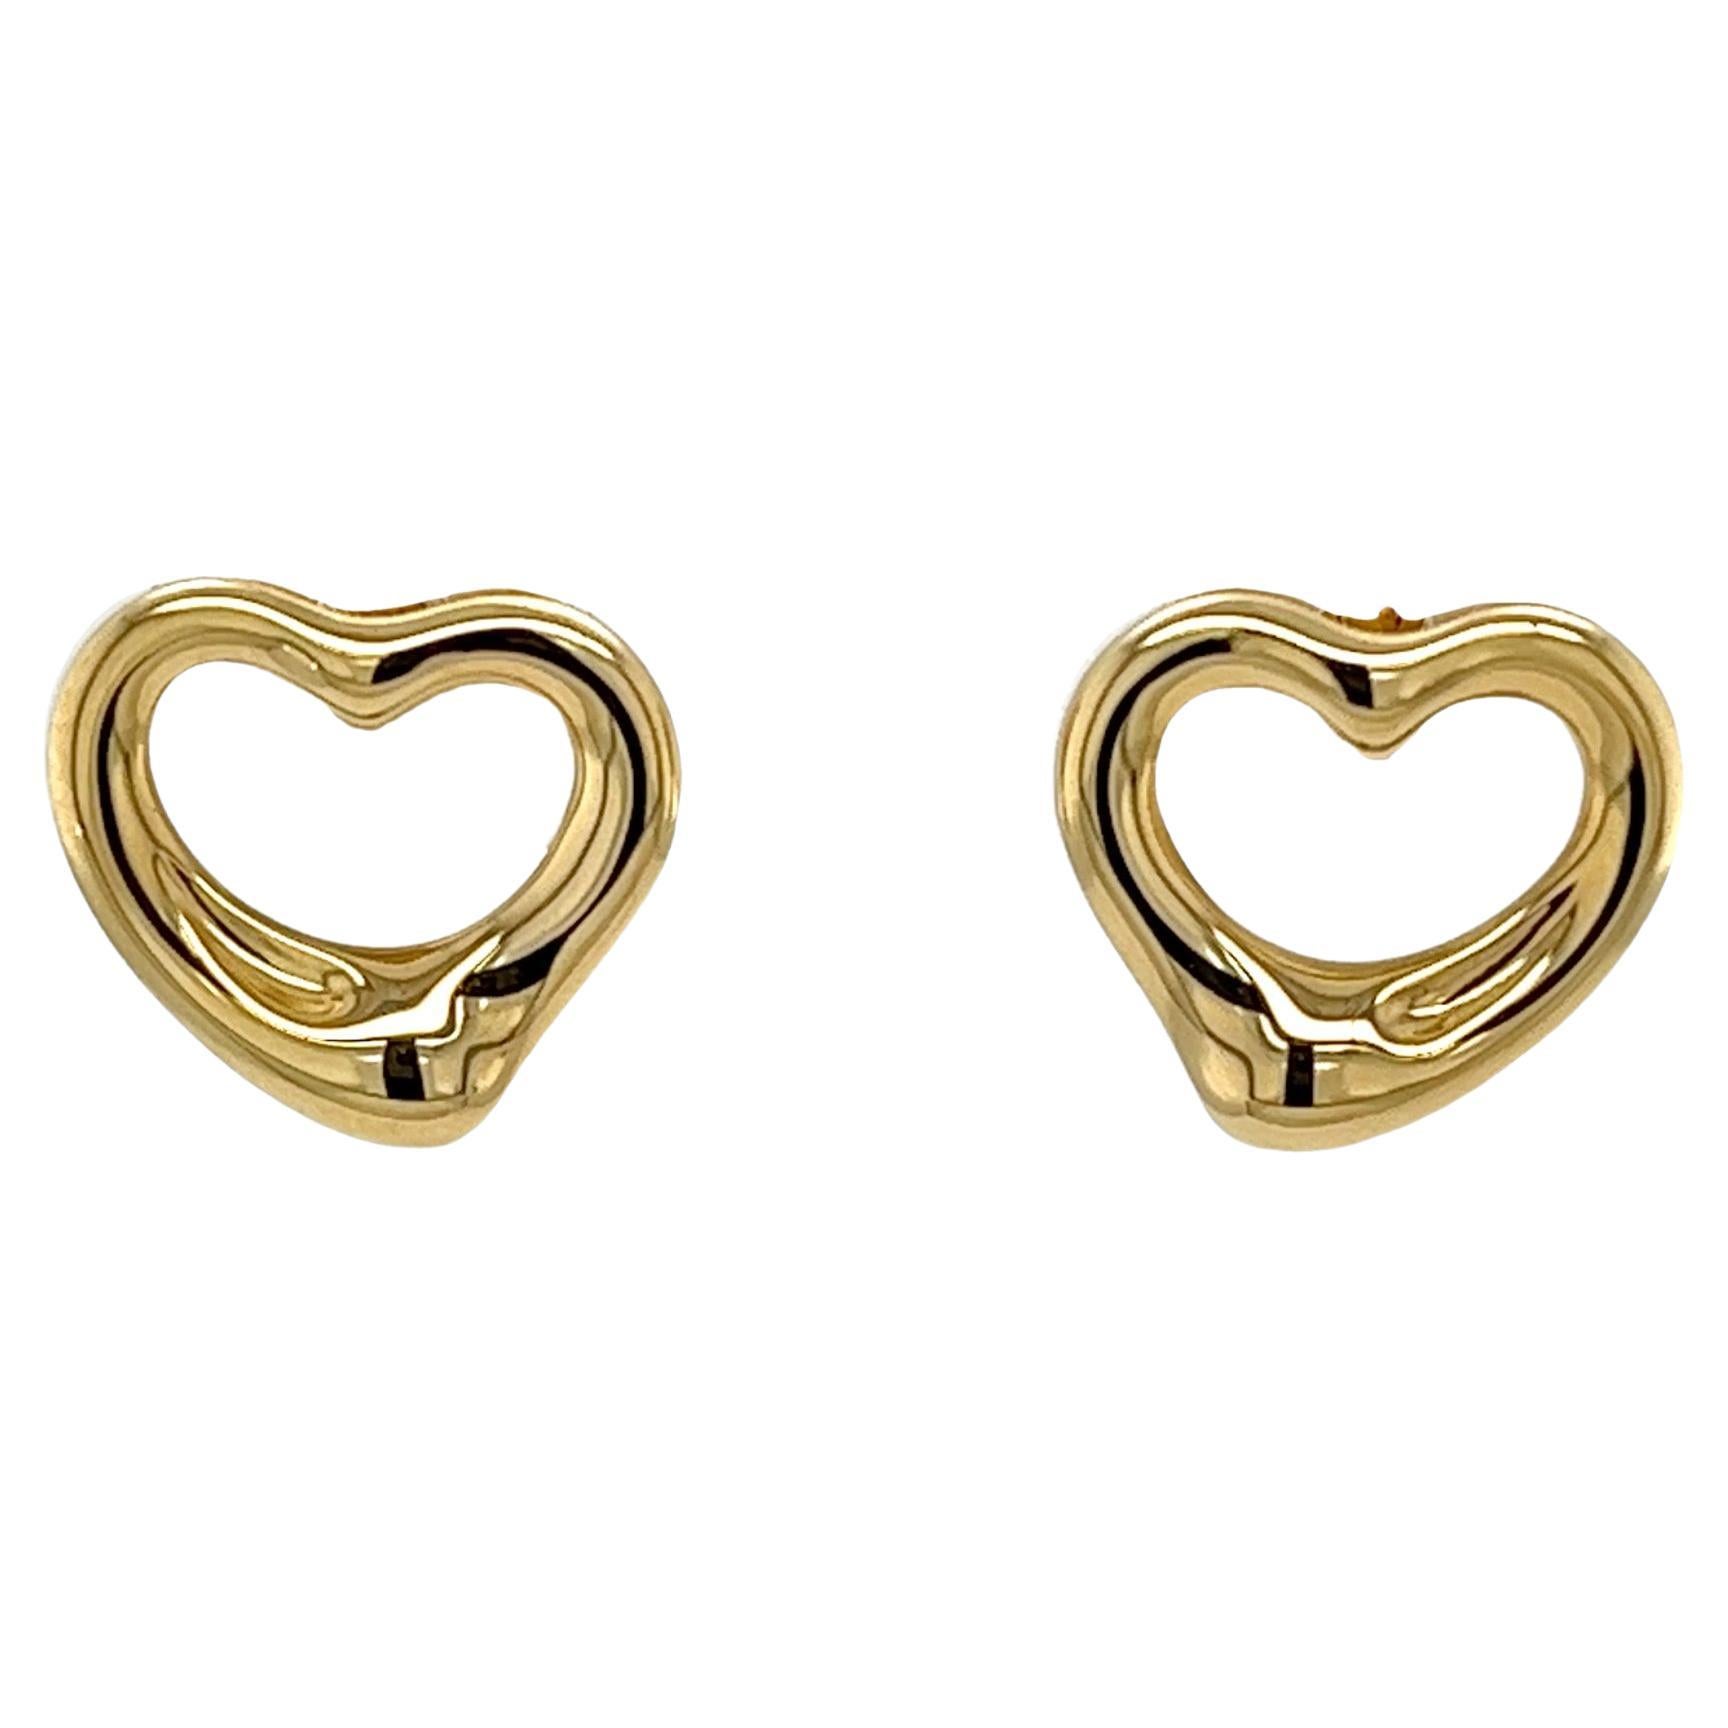 Tiffany & Co. Elsa Peretti open heart stud earrings set in 18ct Yellow Gold